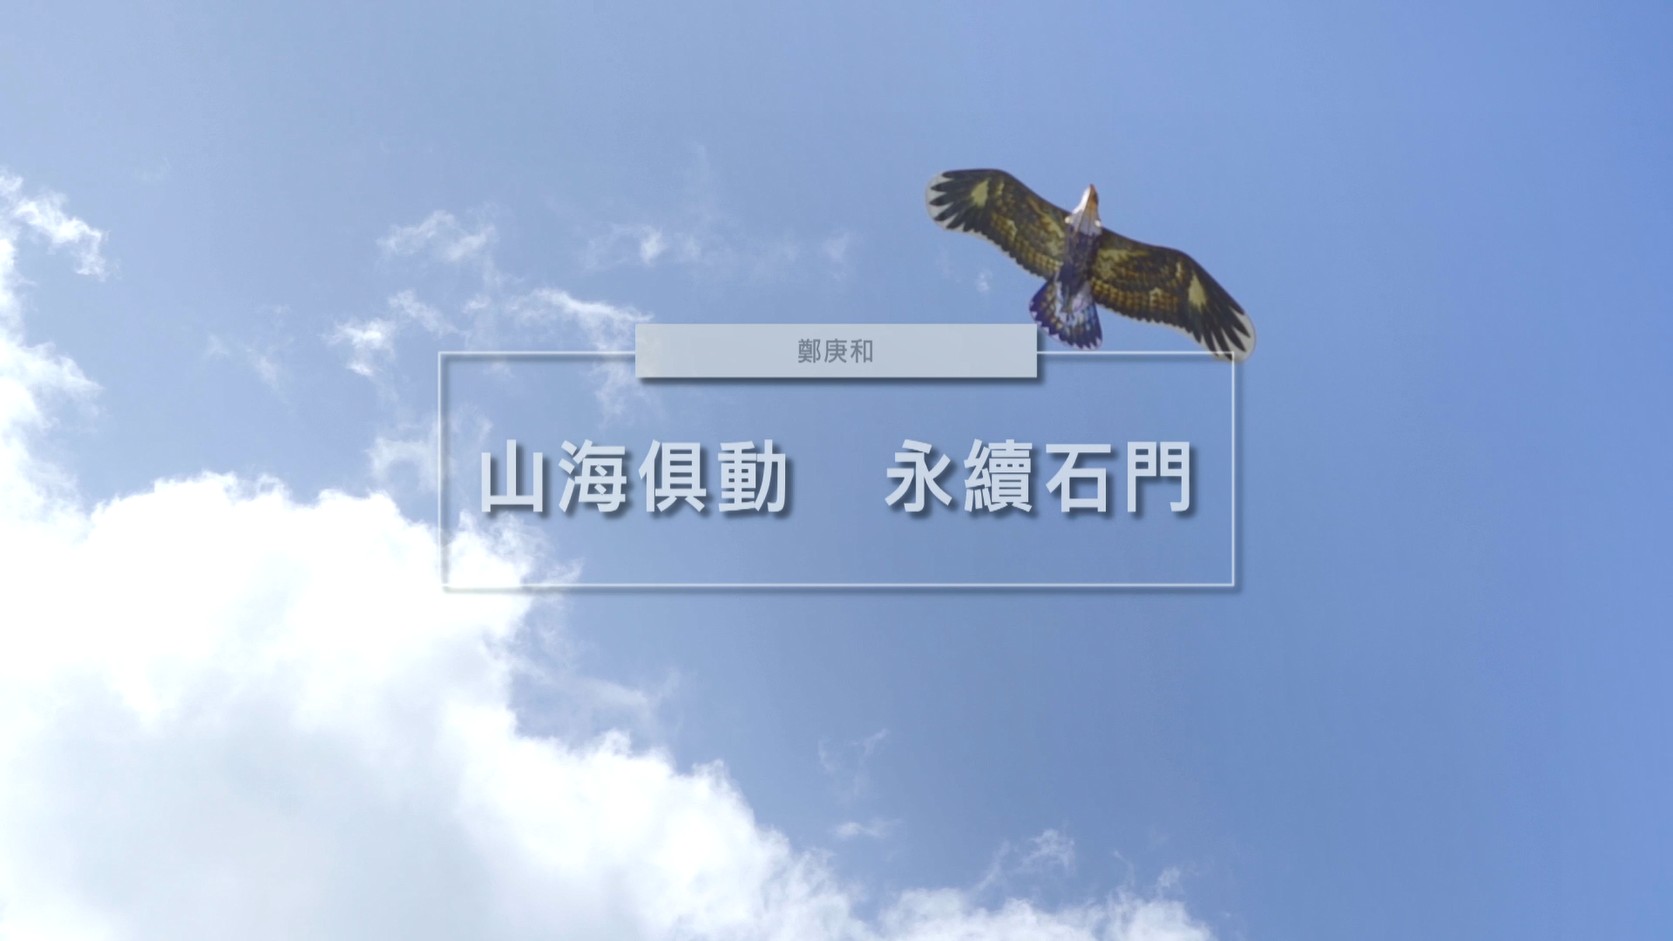  石門風箏協會宣傳片